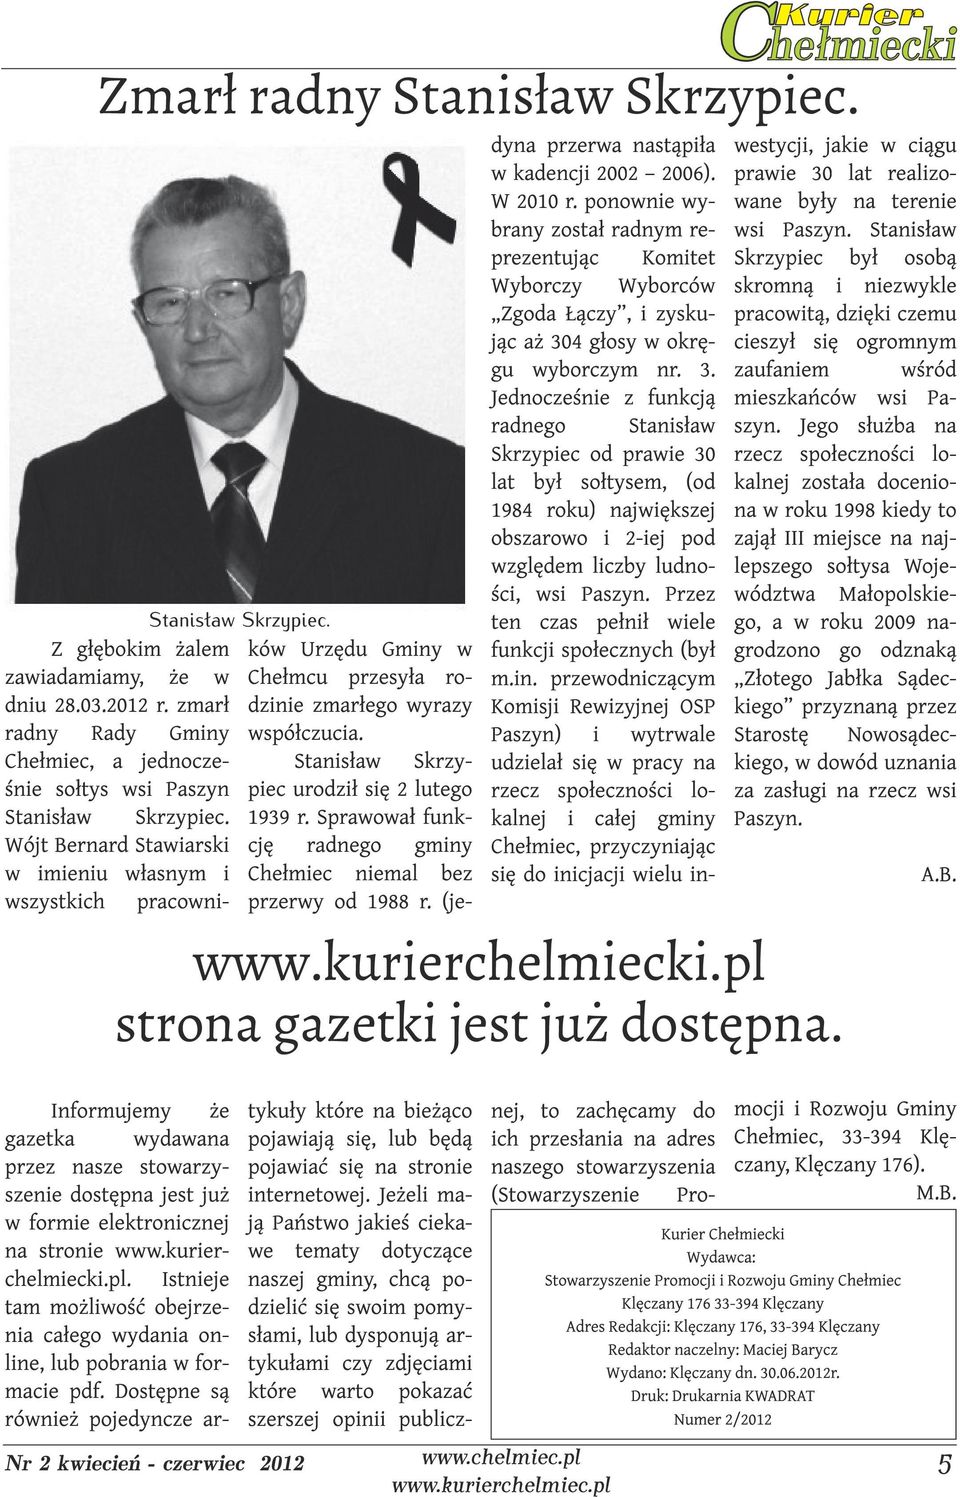 Sprawował funkwójt Bernard Stawiarski cję radnego gminy w imieniu własnym i Chełmiec niemal bez wszystkich pracowni- przerwy od 1988 r. (je- dyna przerwa nastąpiła w kadencji 2002 2006). W 2010 r.